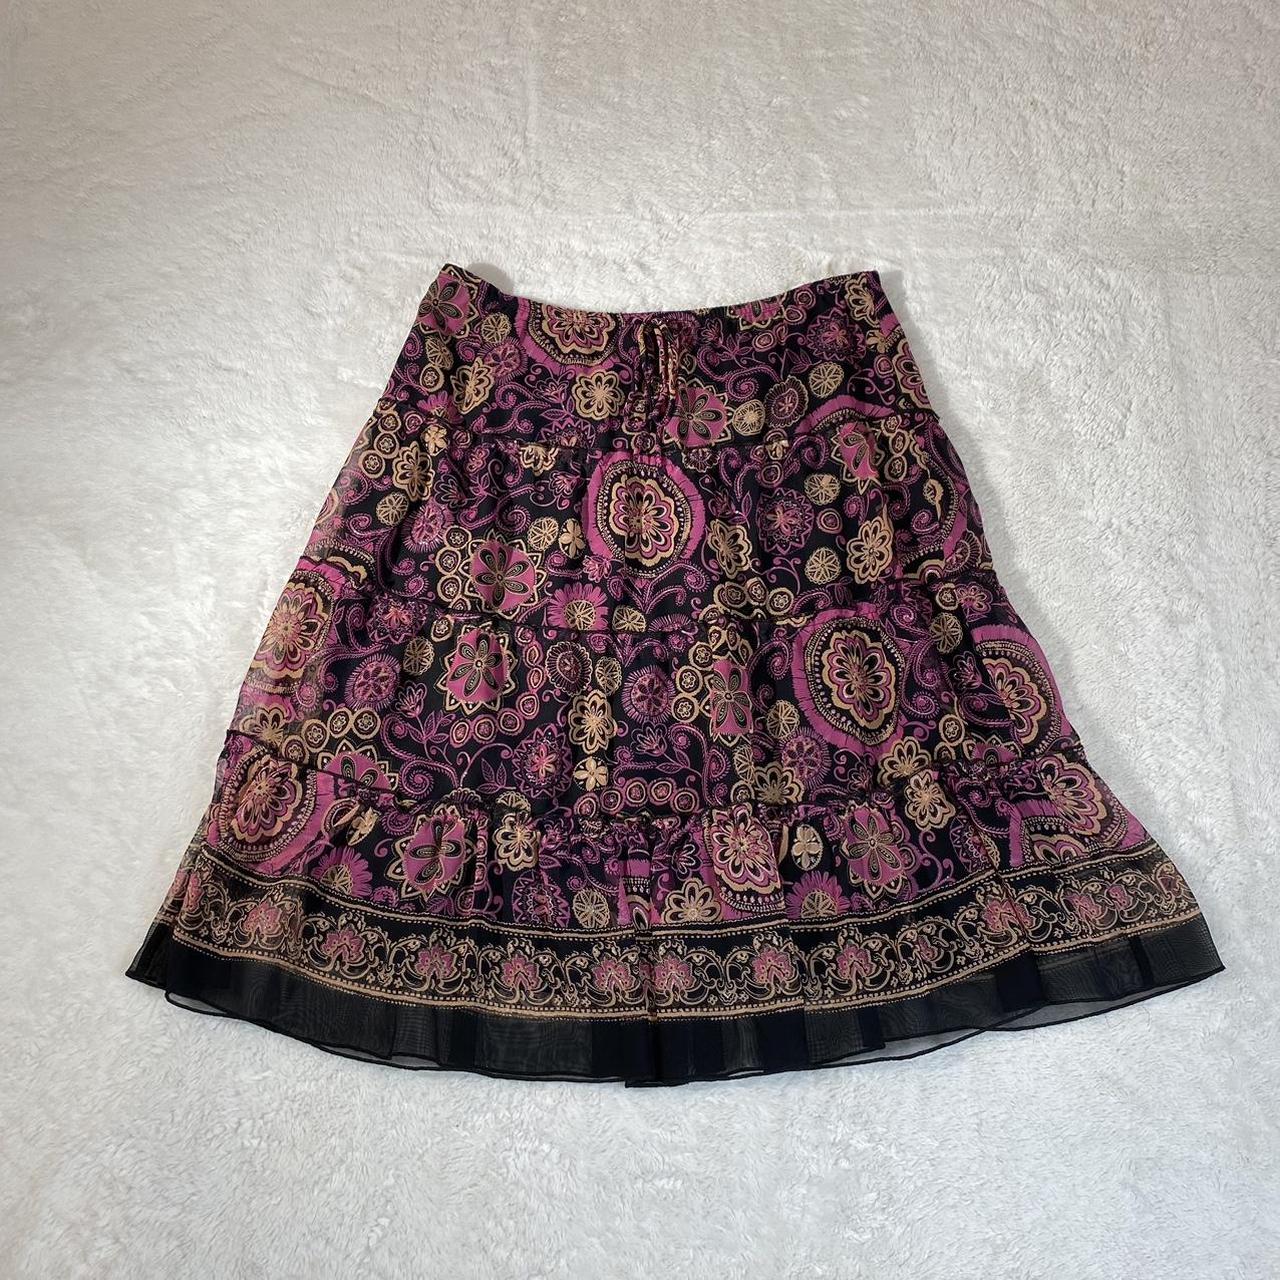 American Vintage Women's Pink and Black Skirt | Depop